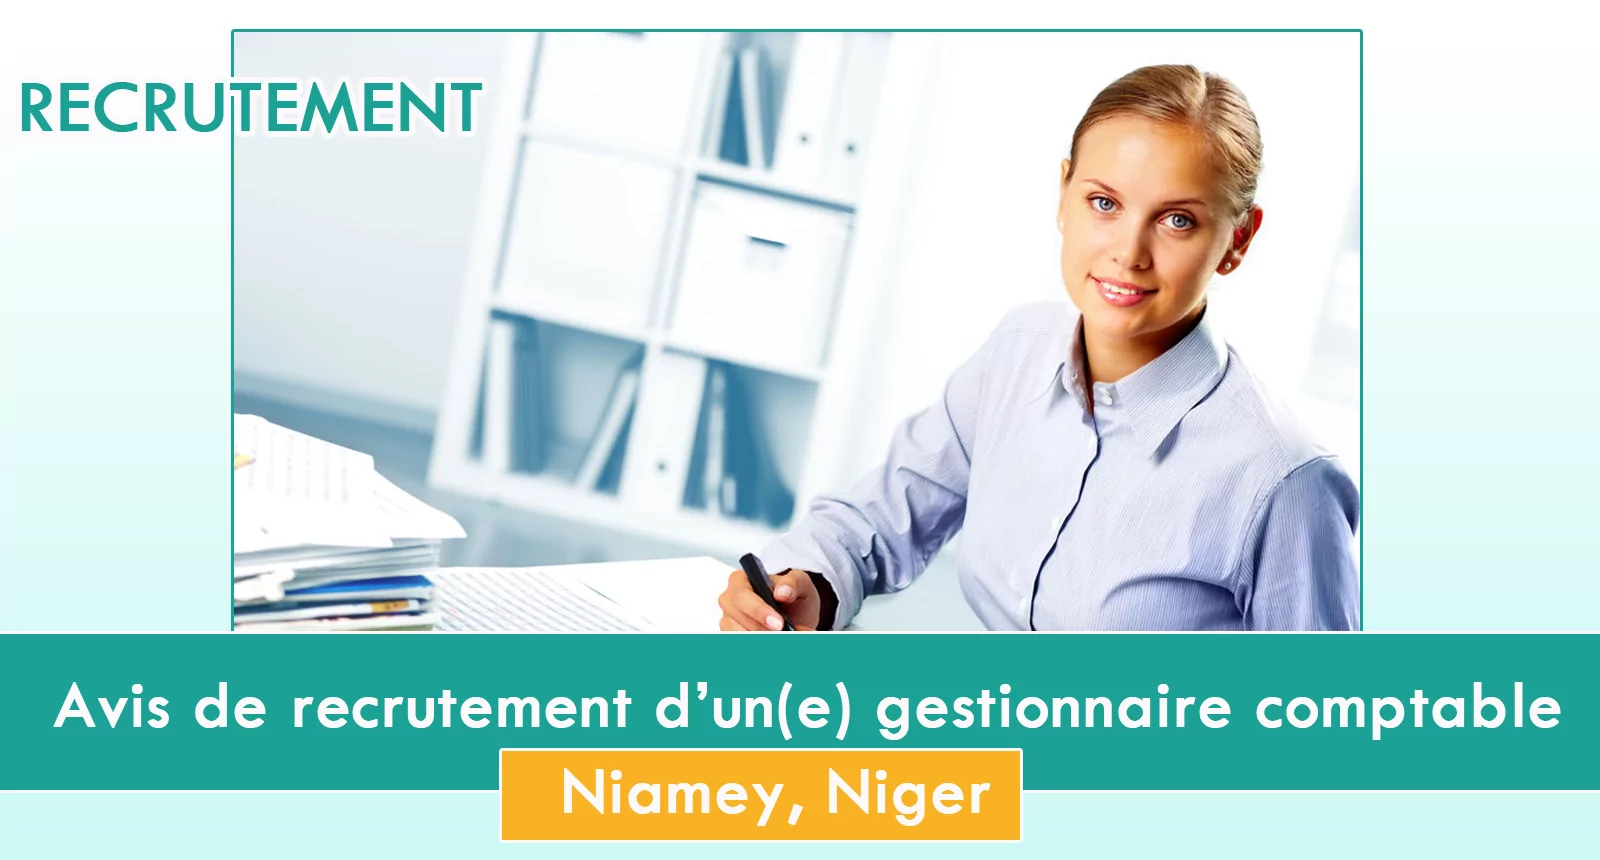 Avis de recrutement d’un(e) gestionnaire comptable, Niamey, Niger